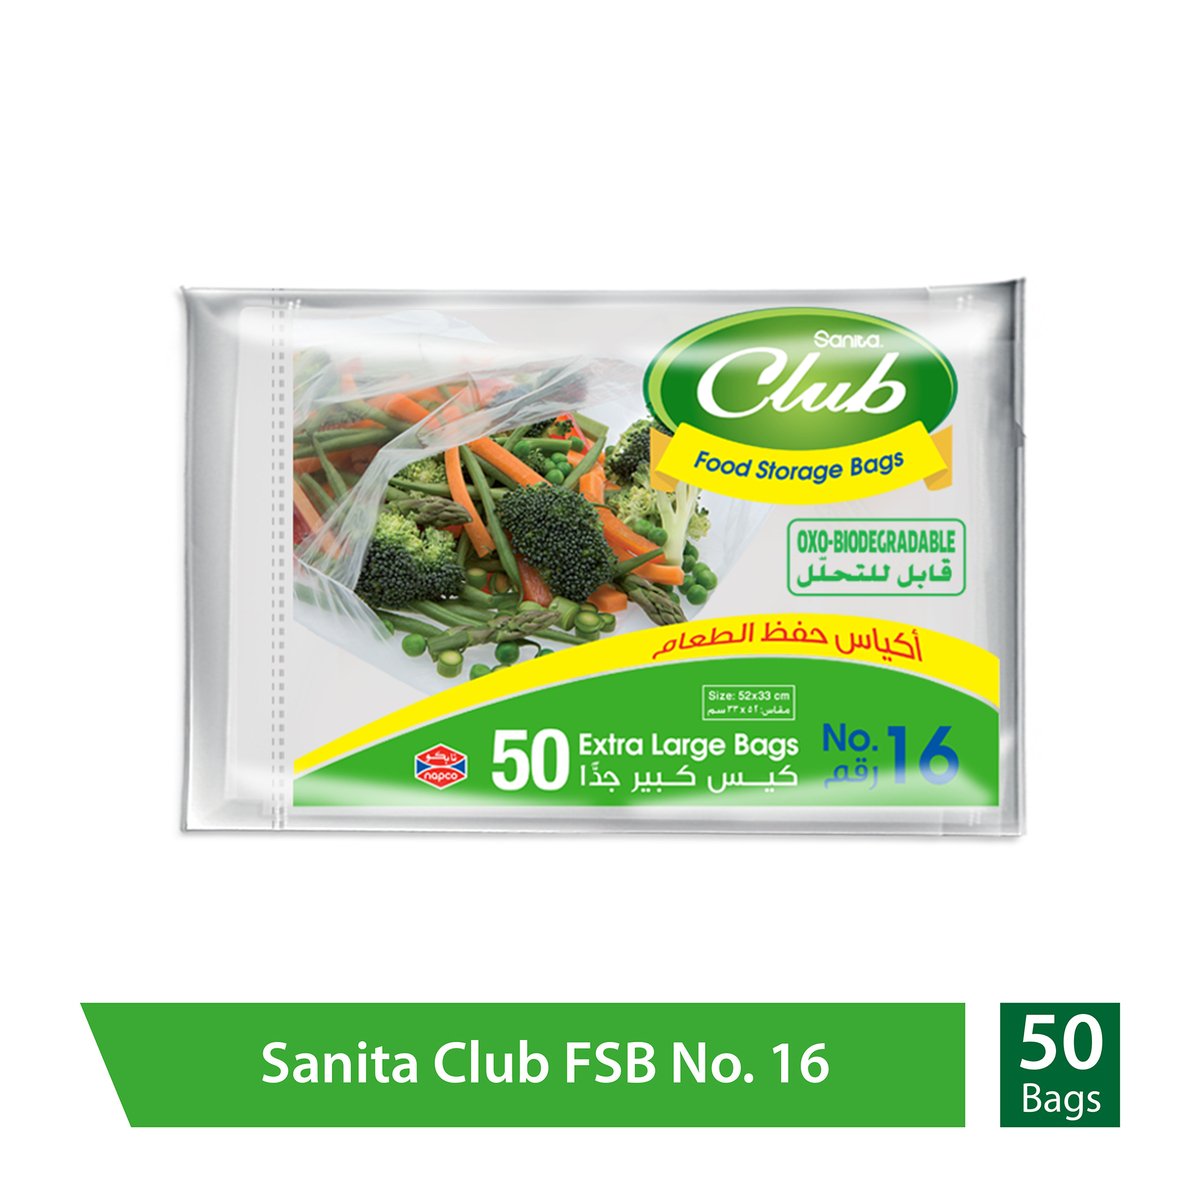 Buy Sanita Club Food Storage Bags Biodegradable #16 Size 52 x 33cm 50pcs Online at Best Price | Food Bags | Lulu KSA in UAE